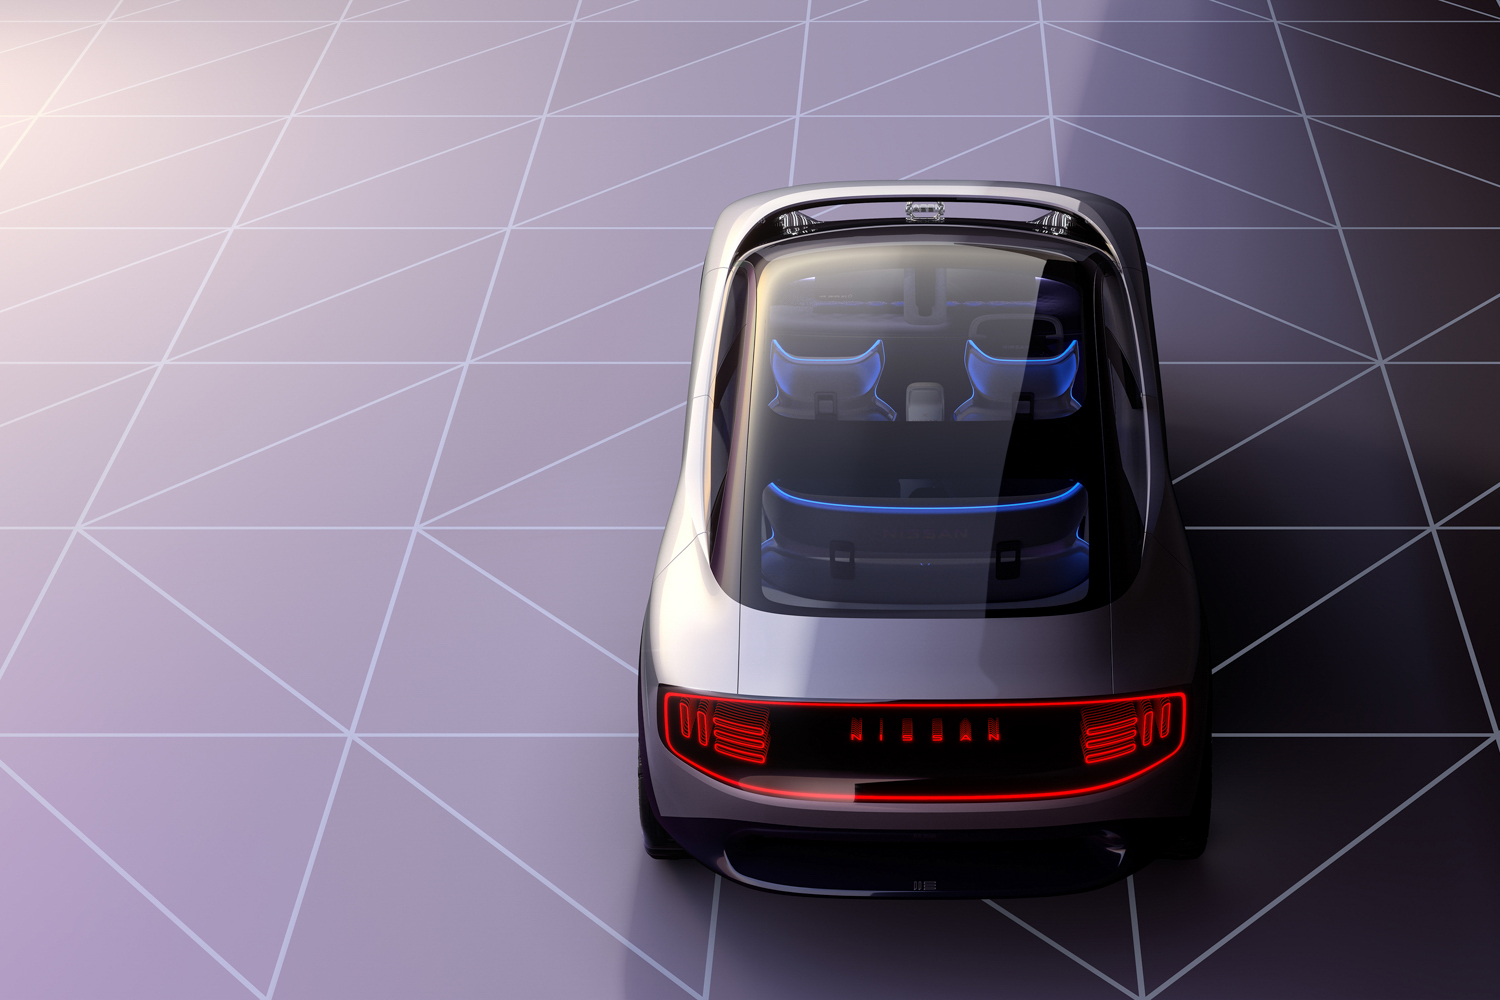 Nissan unveils new EV concepts